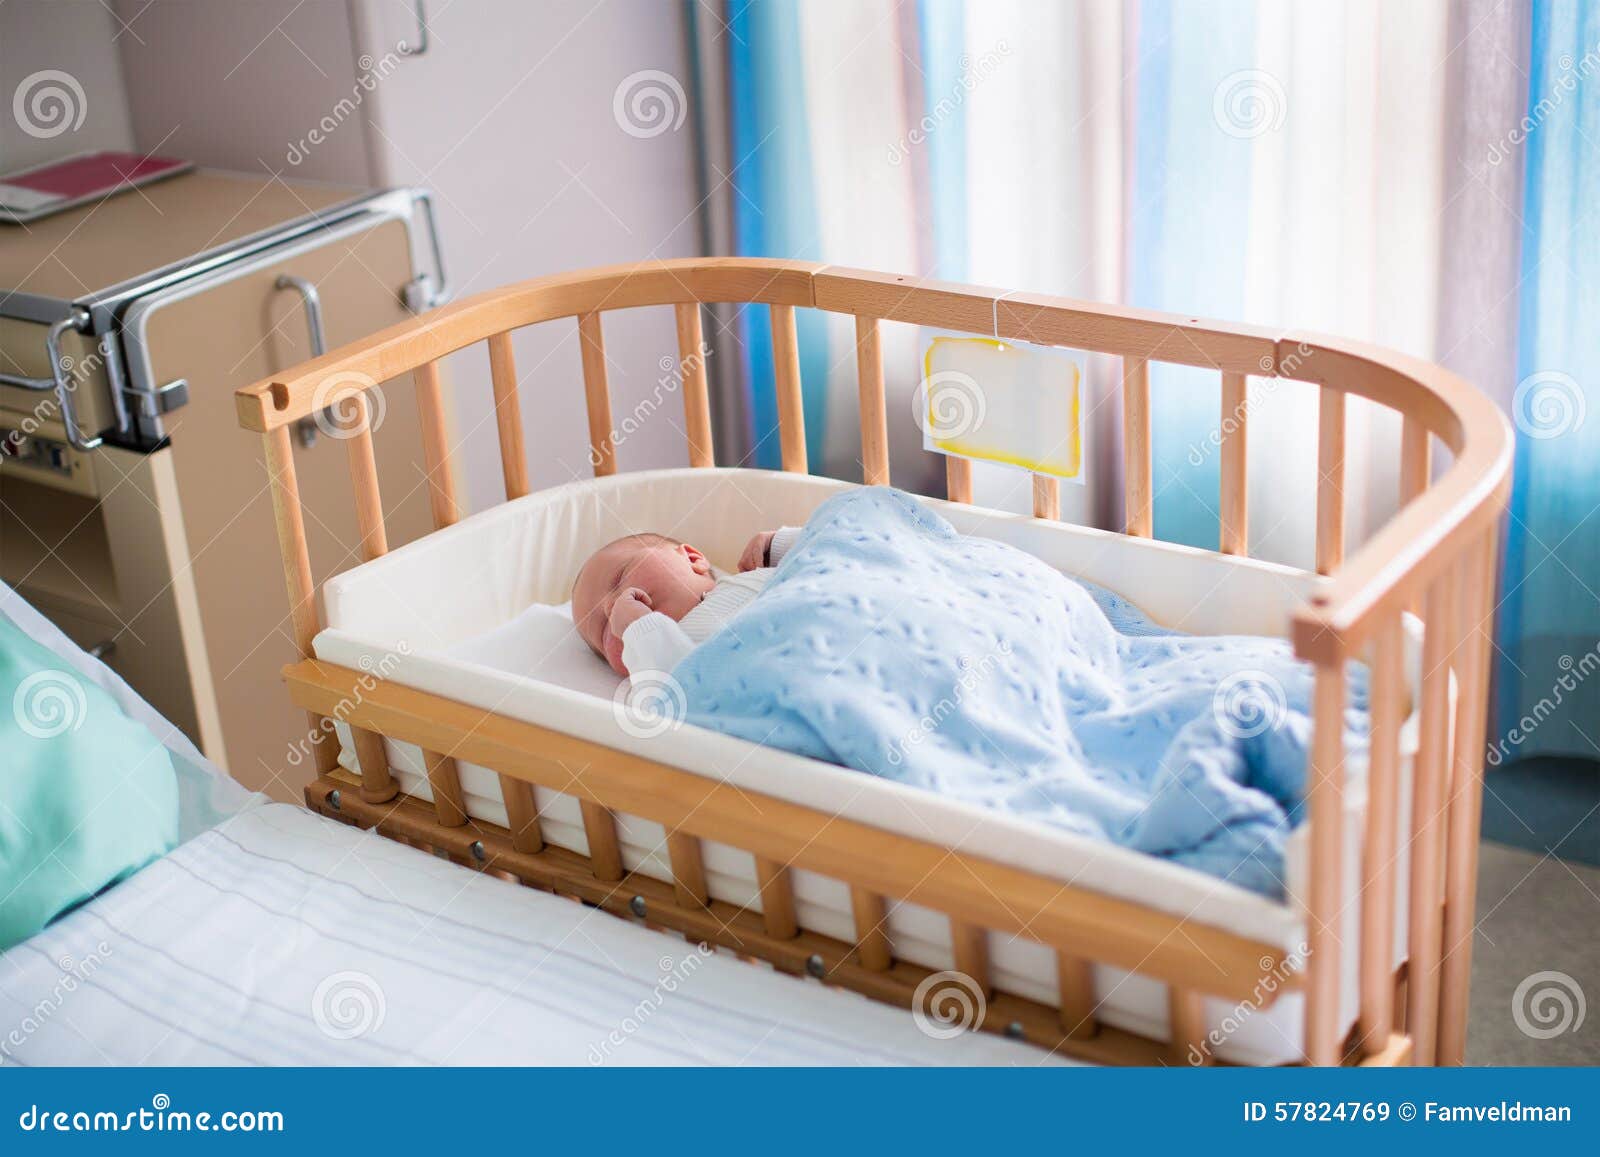 newborn baby cot